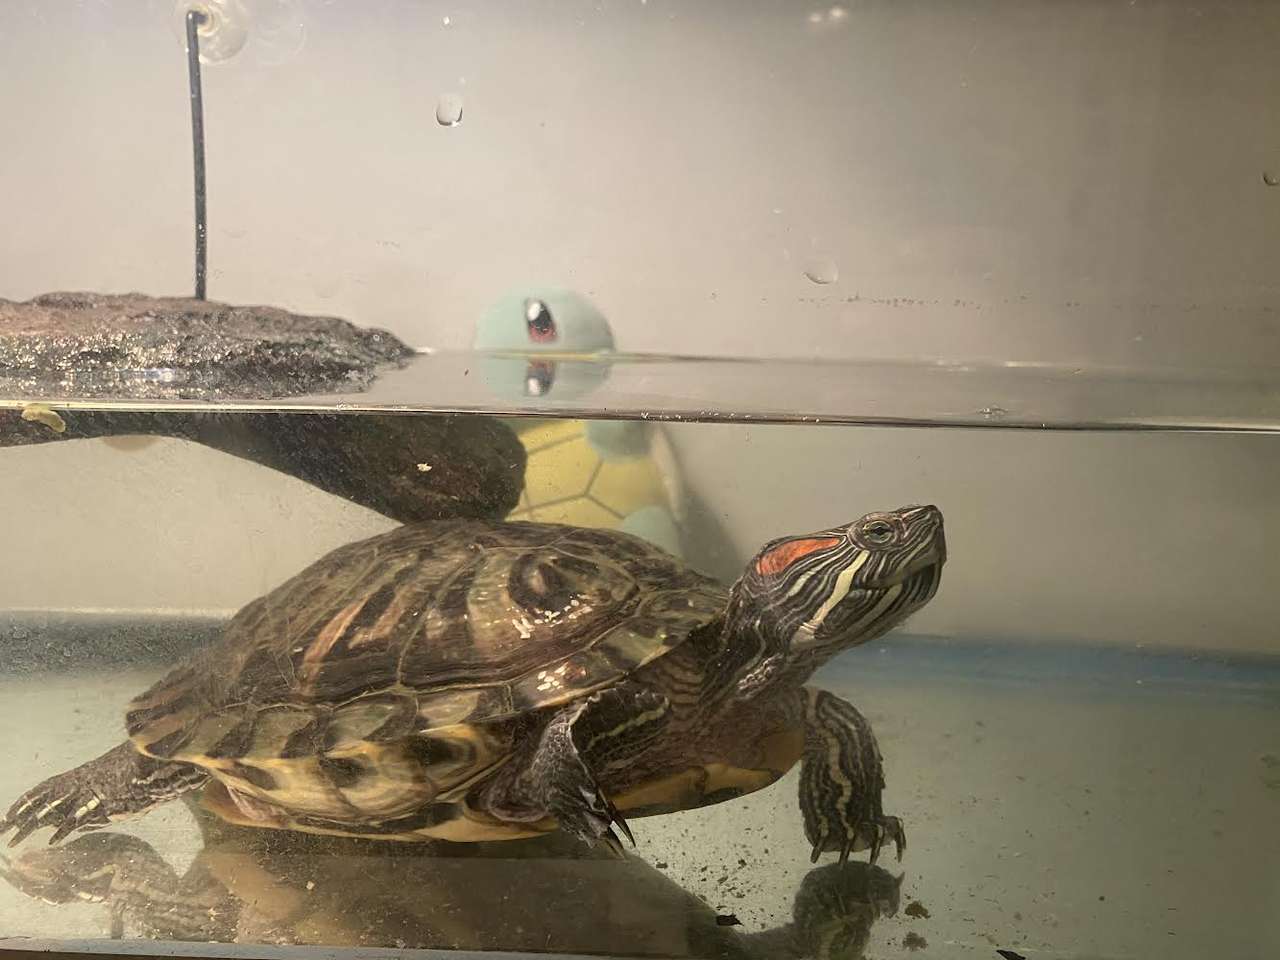 Esta tartaruga está prestes a ir em uma grande aventura puzzle online a partir de fotografia